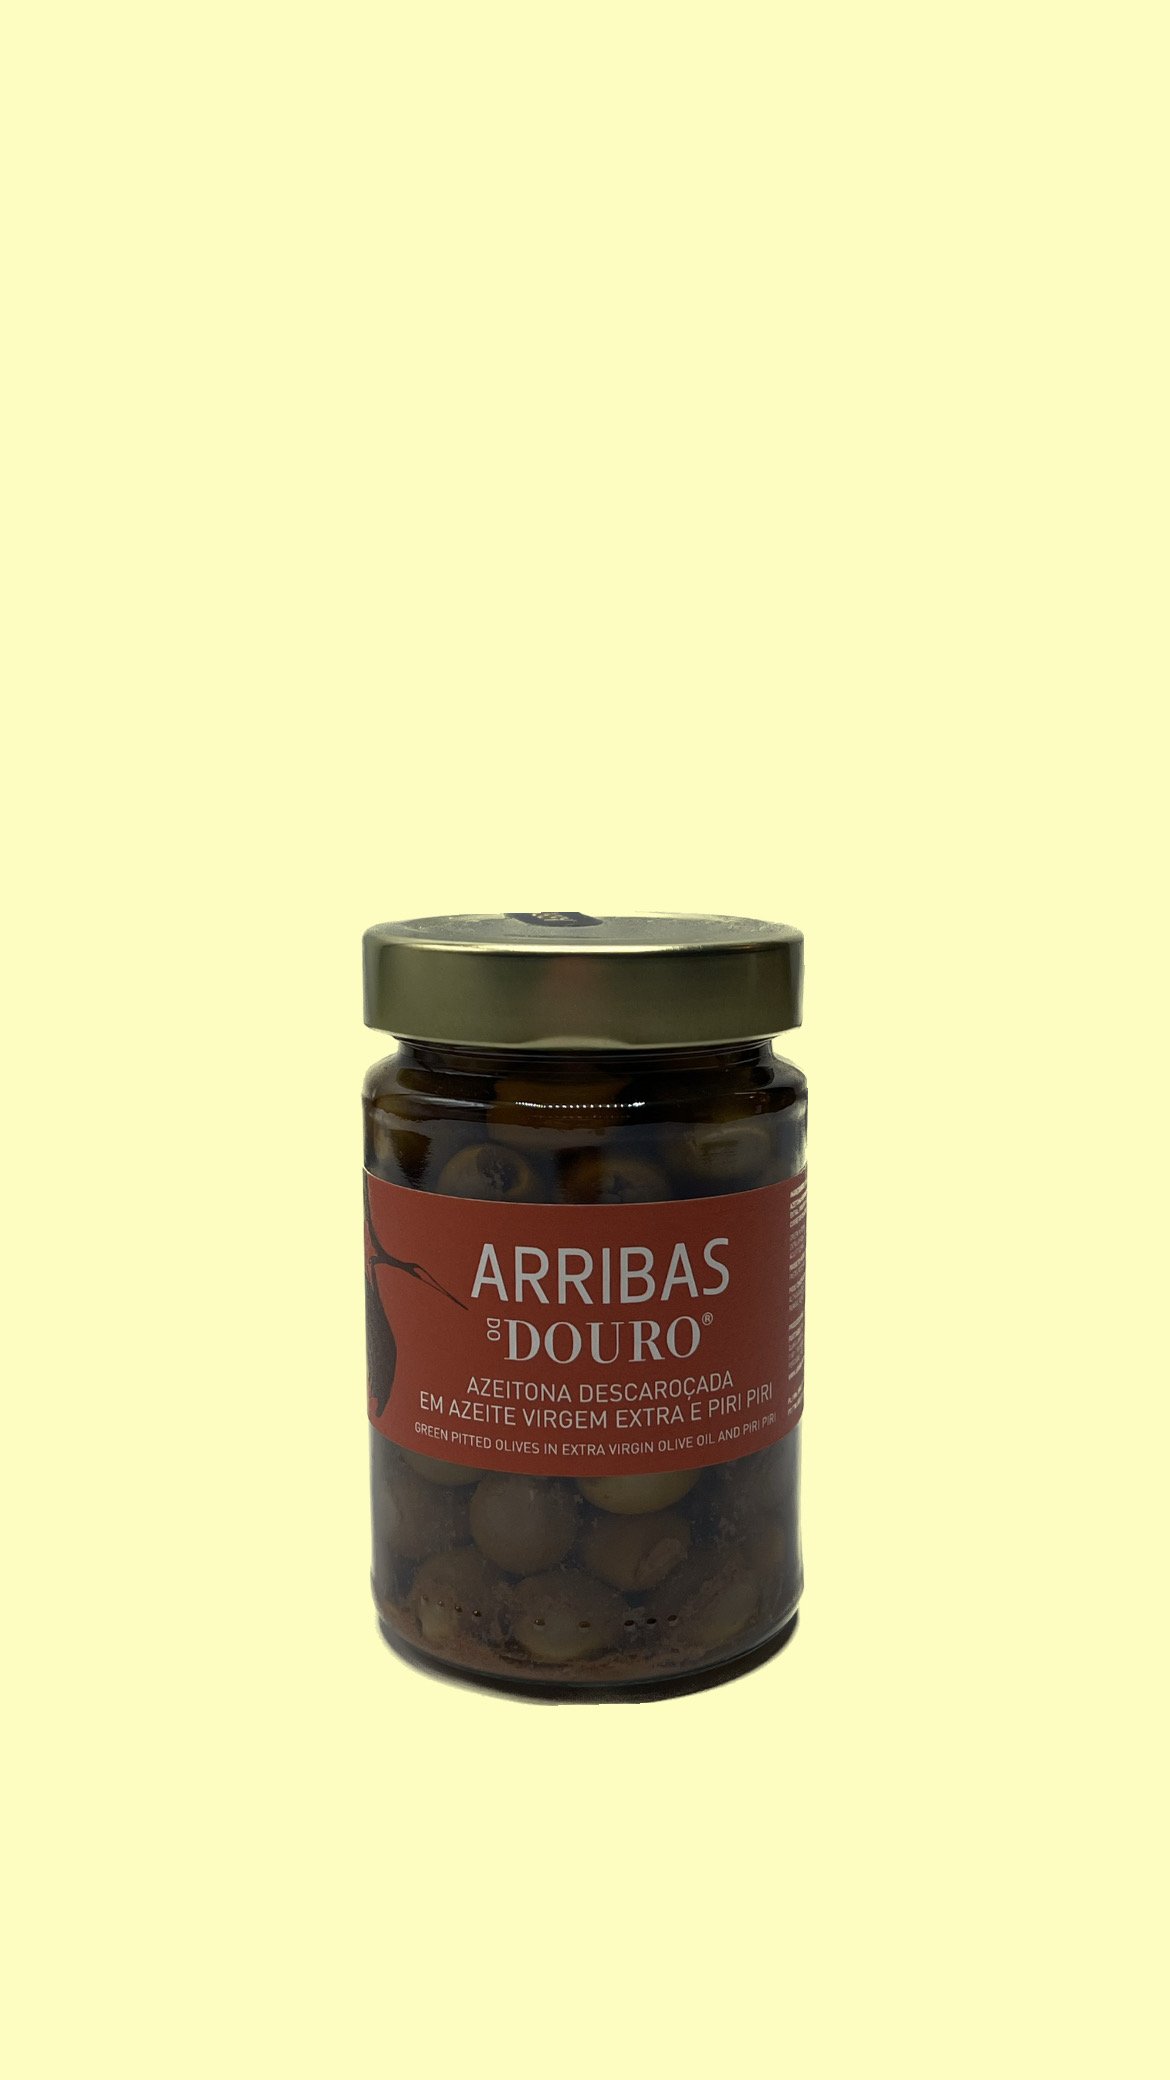 Azeitona Descaroçada em Azeite Virgem Extra e Piri Piri, Arribas do Douro